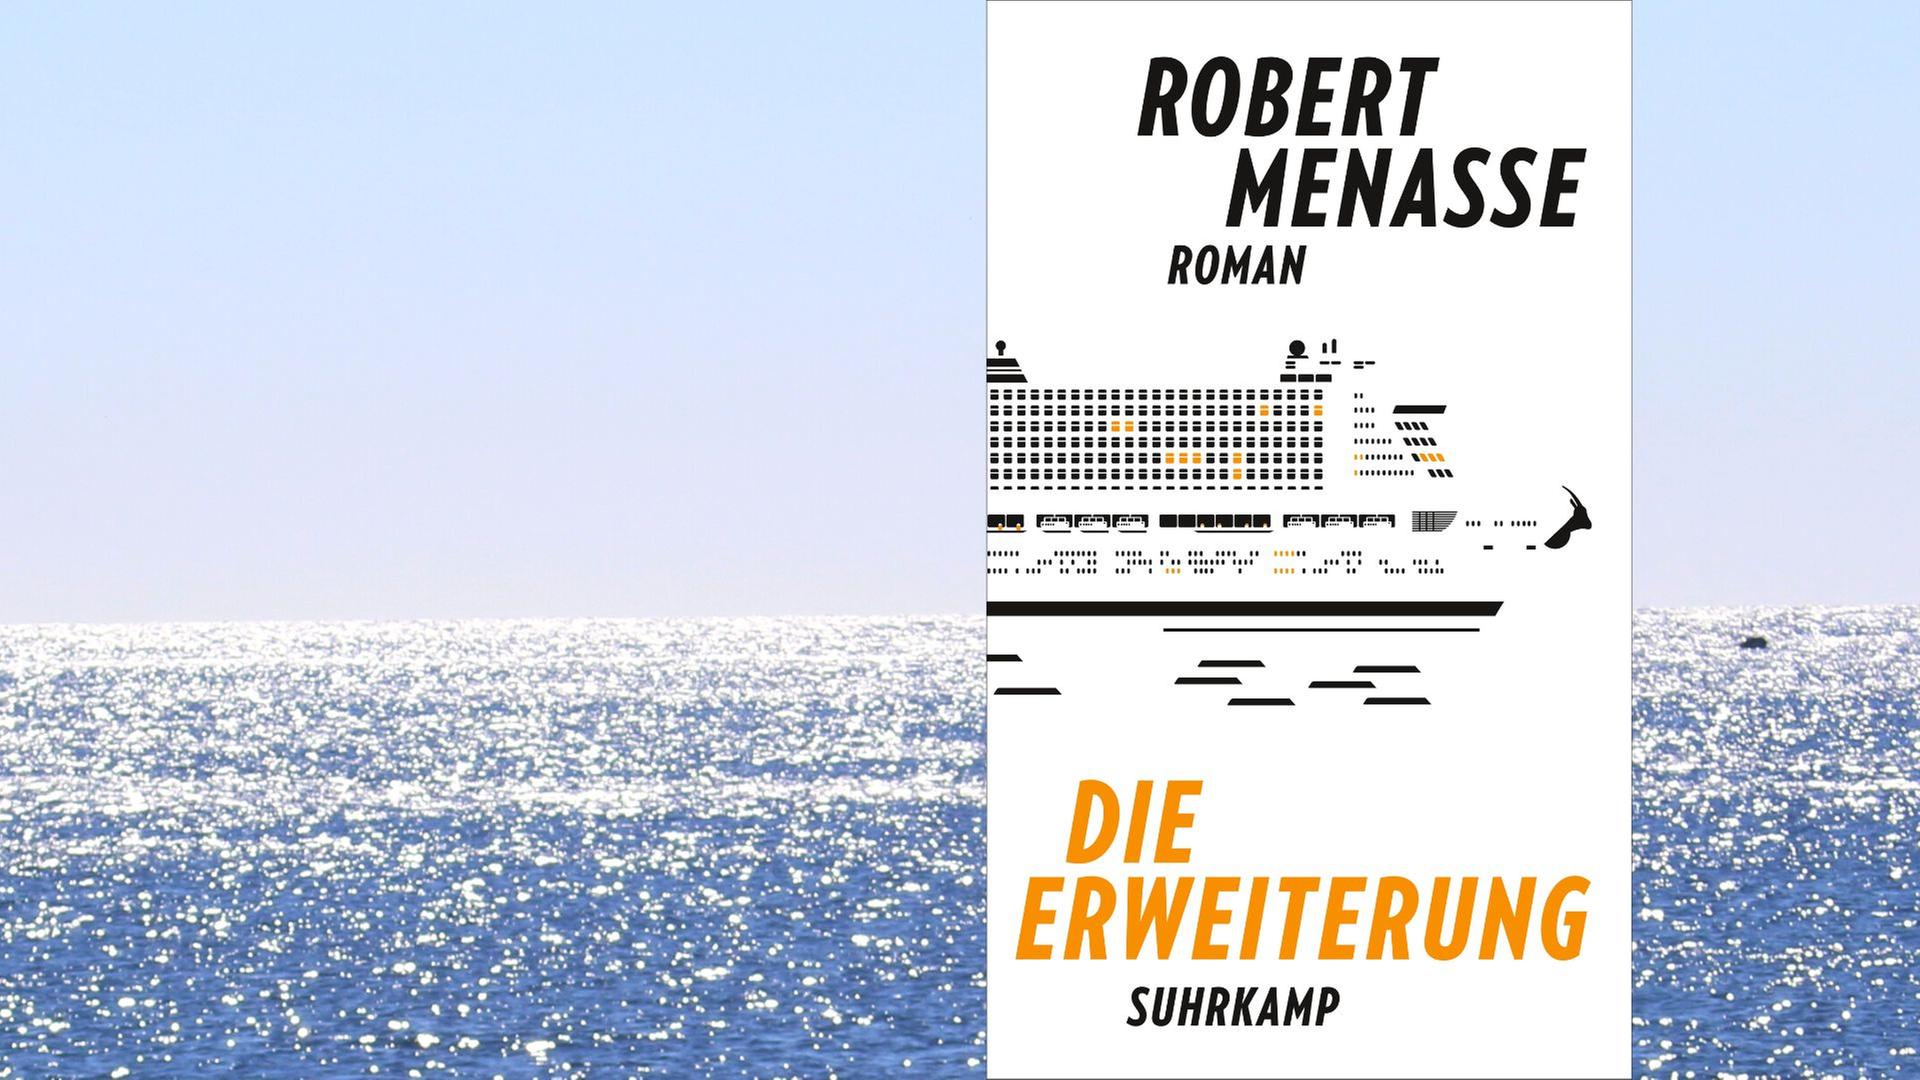 Robert Menasse: "Die Erweiterung"